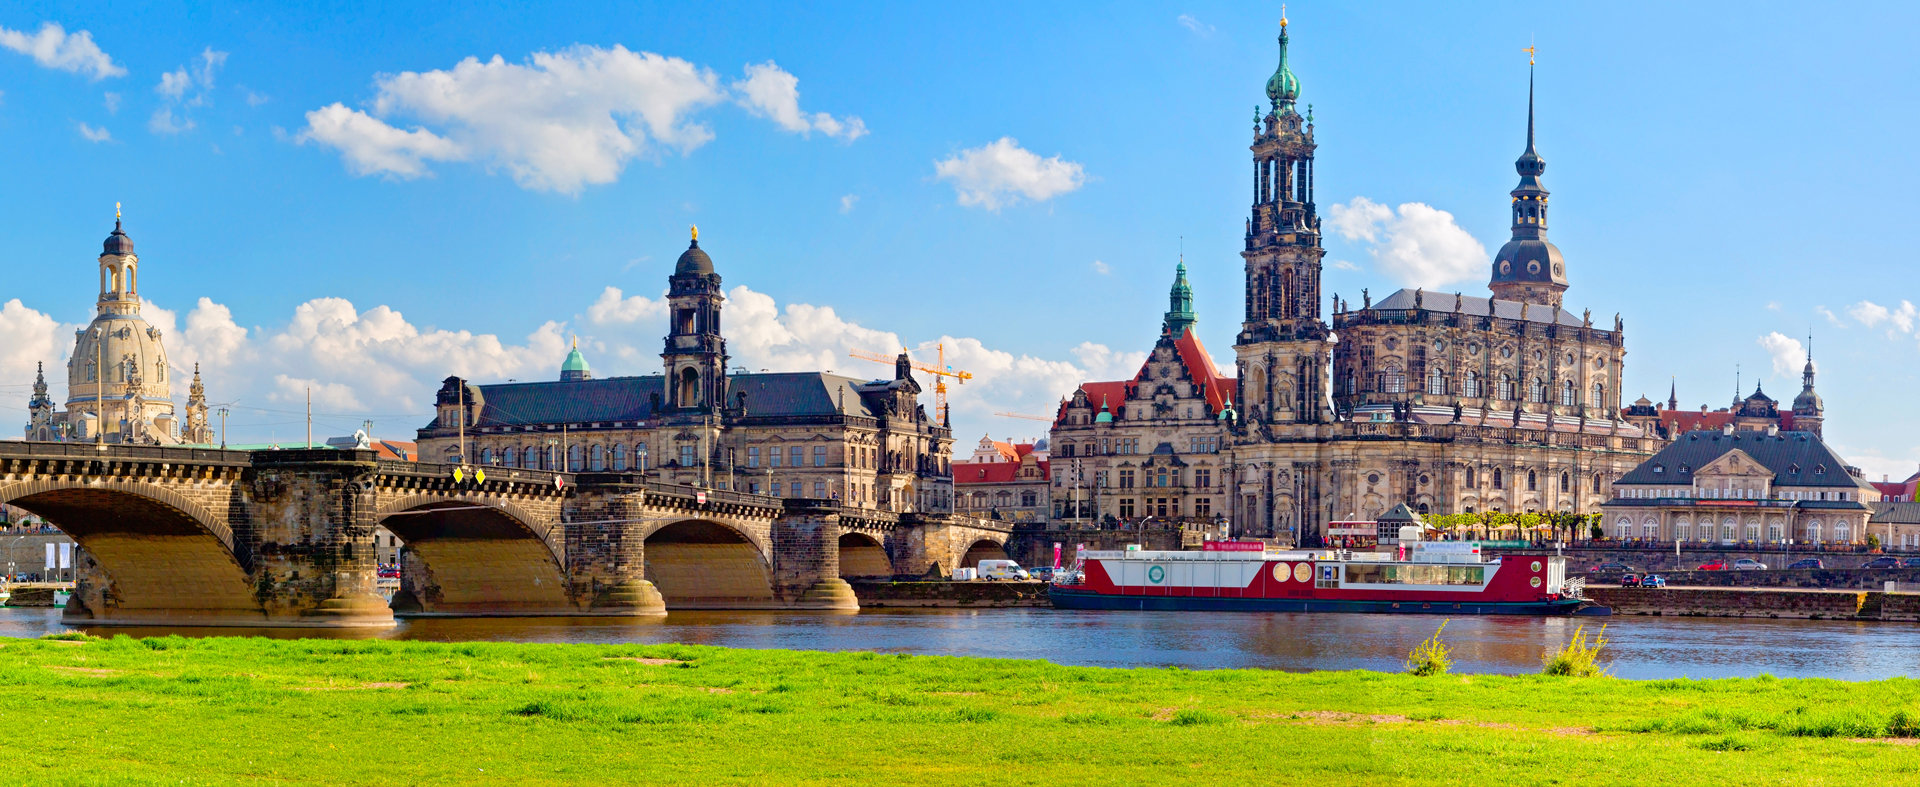 Immobilienmakler Dresden Immobilien bewerten verkaufen und vermieten mit Erfolg